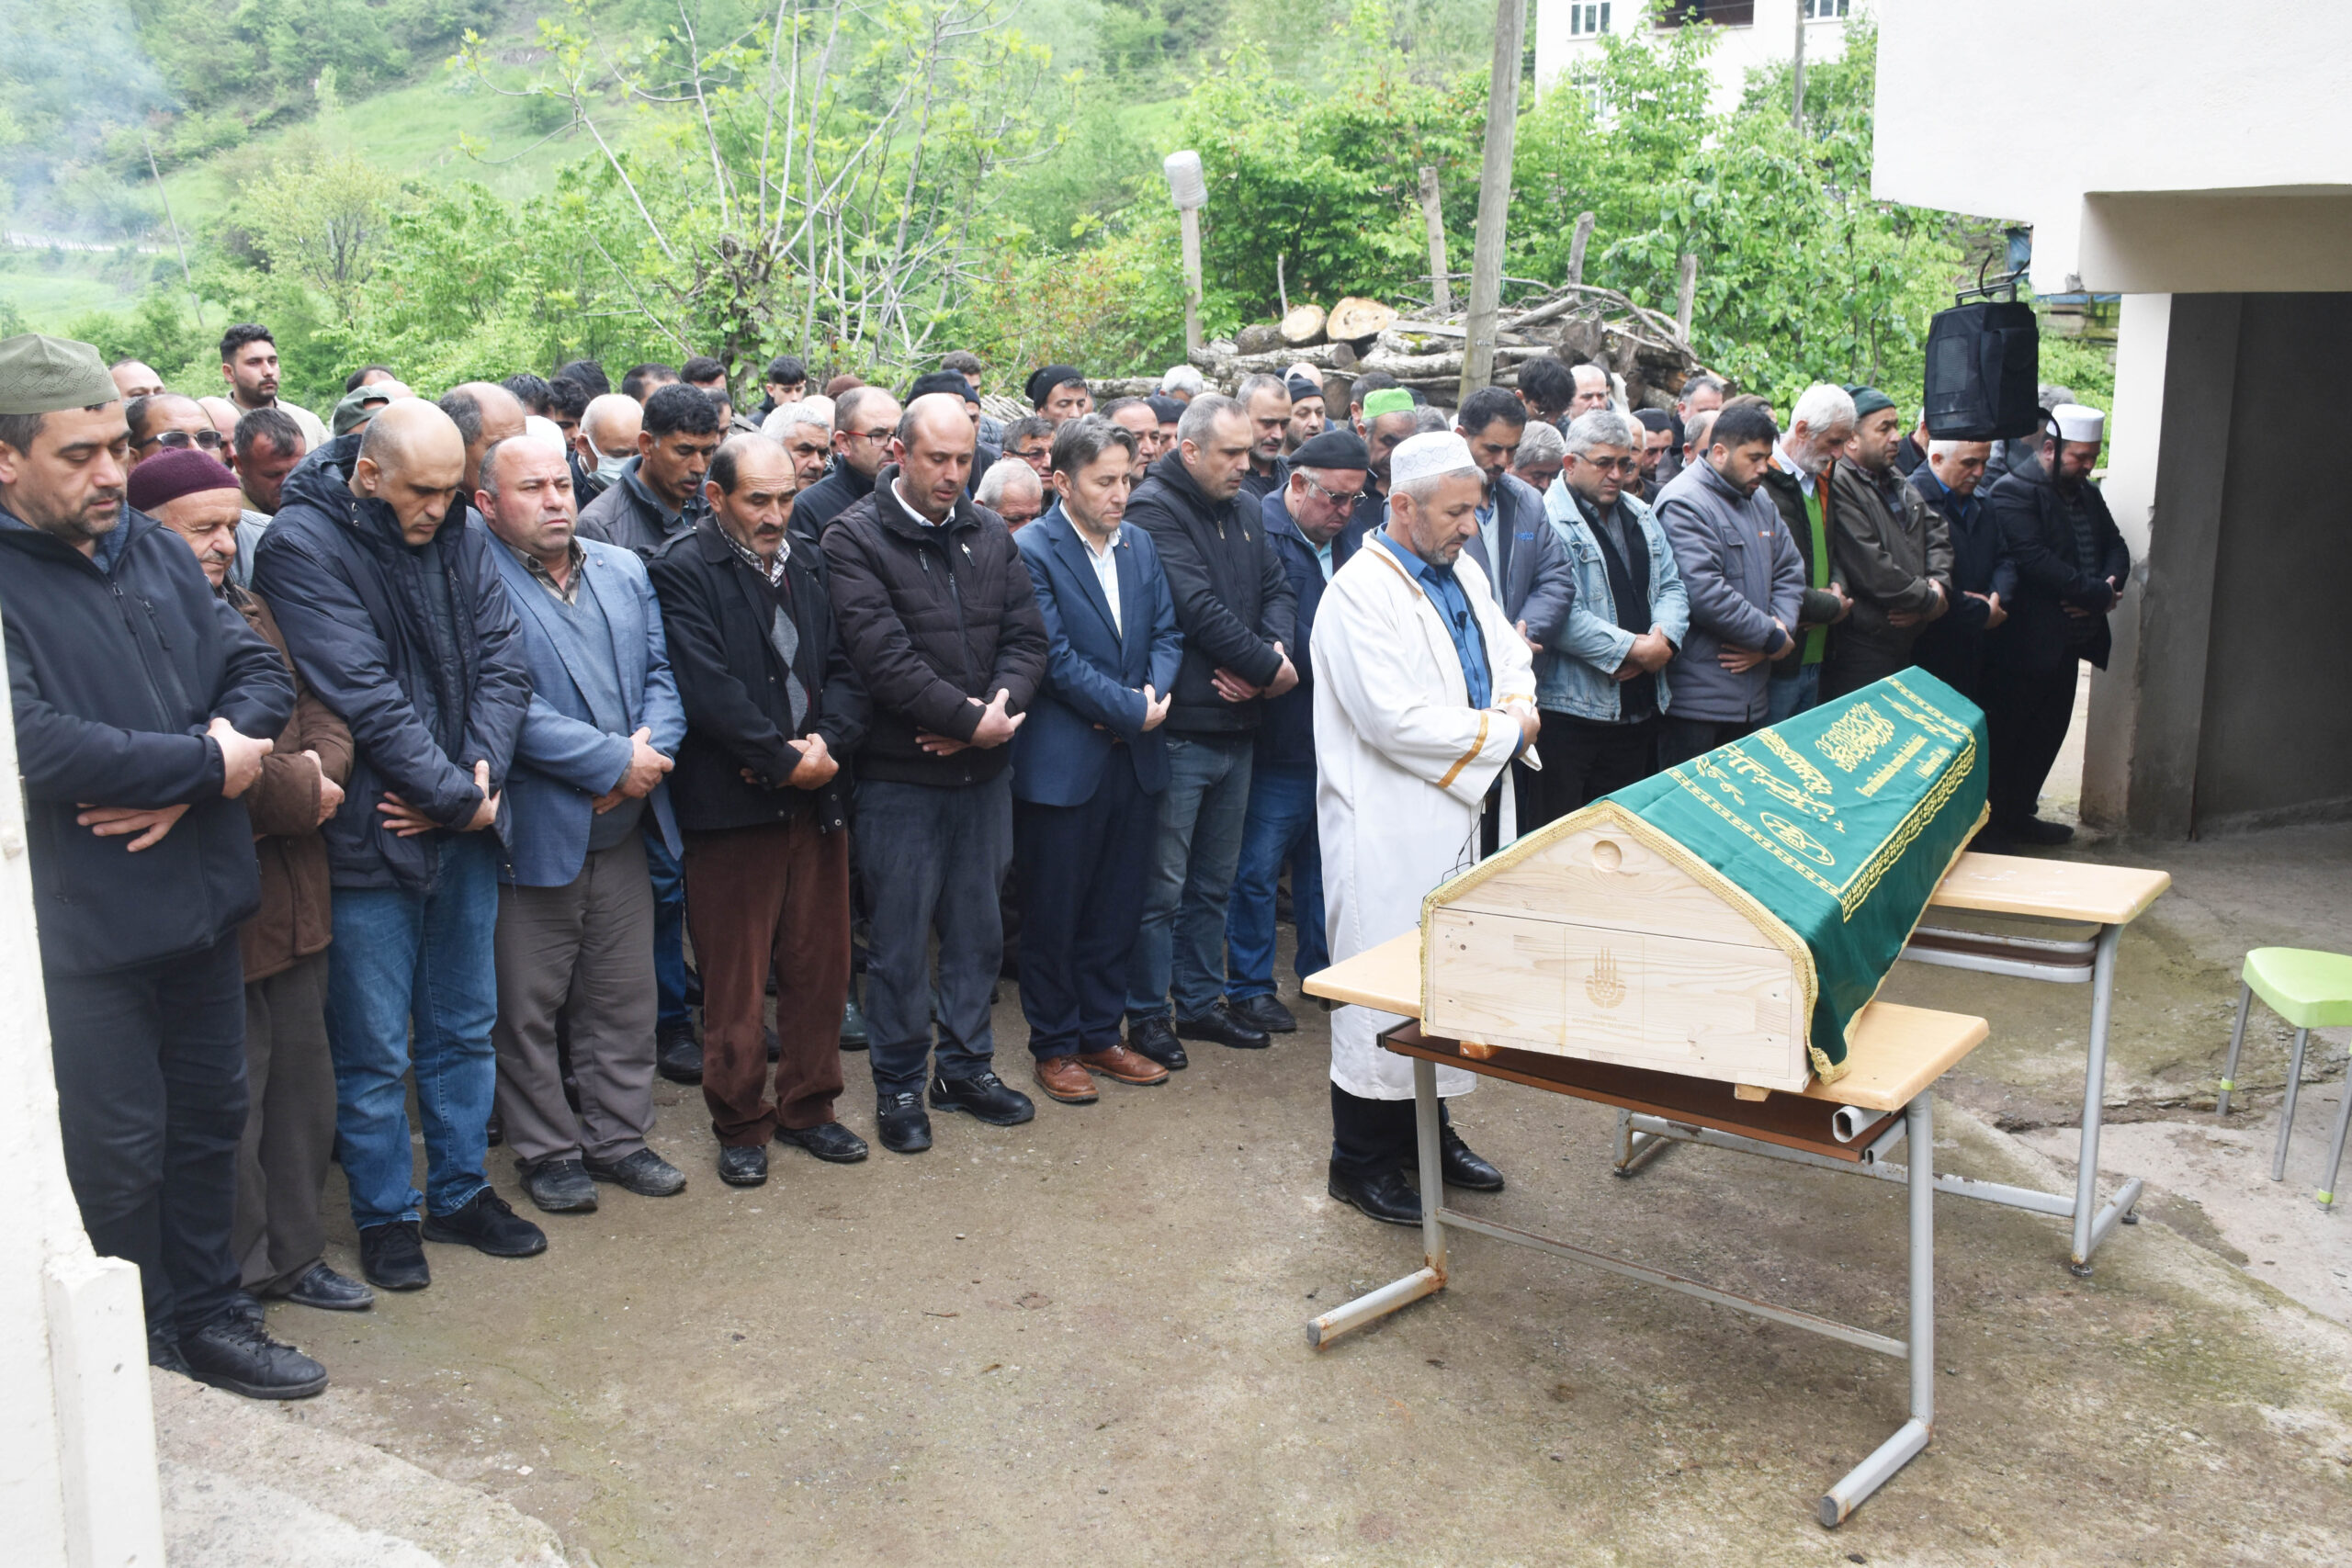 Belediye Başkanımız Hüseyin Kıyma ilçemiz Yeşilköy Hıdır mahallemiz halkından vefat eden Hamdi Tatar’ın cenaze namazına katıldı, ailesi ve yakınlarına başsağlığı diledi.